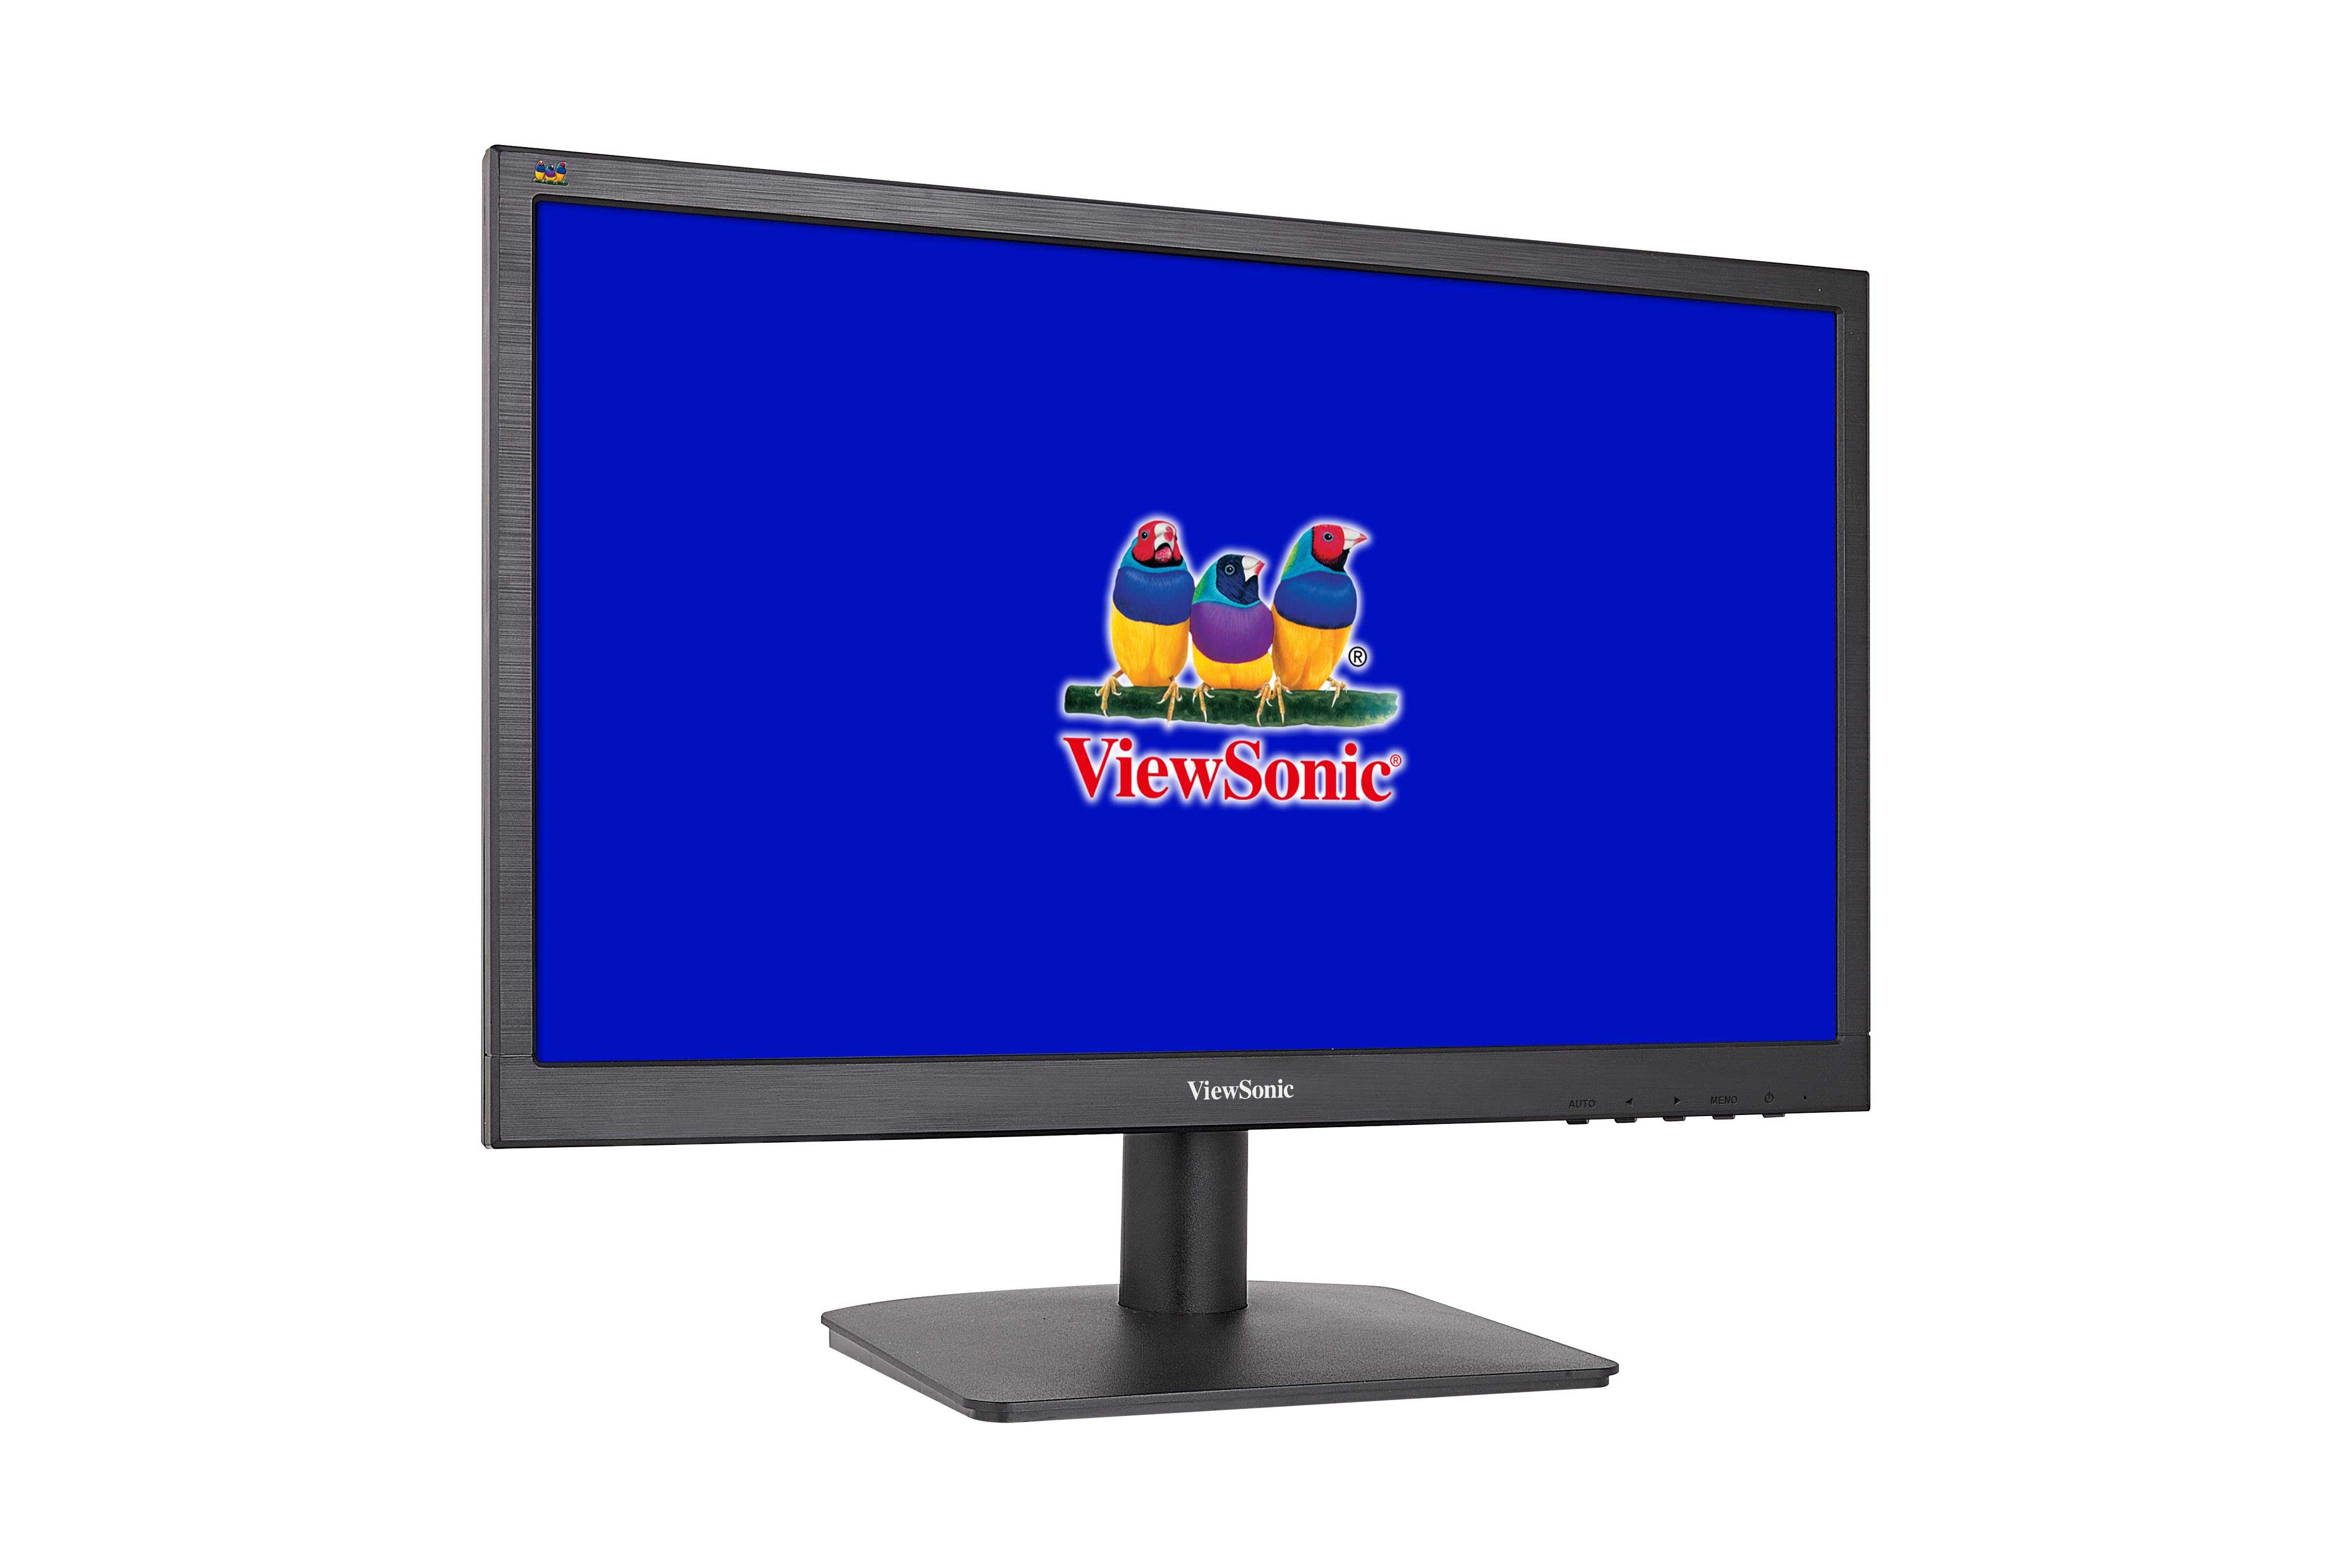 Жк монитор 23.6" viewsonic va2445m-led — купить, цена и характеристики, отзывы